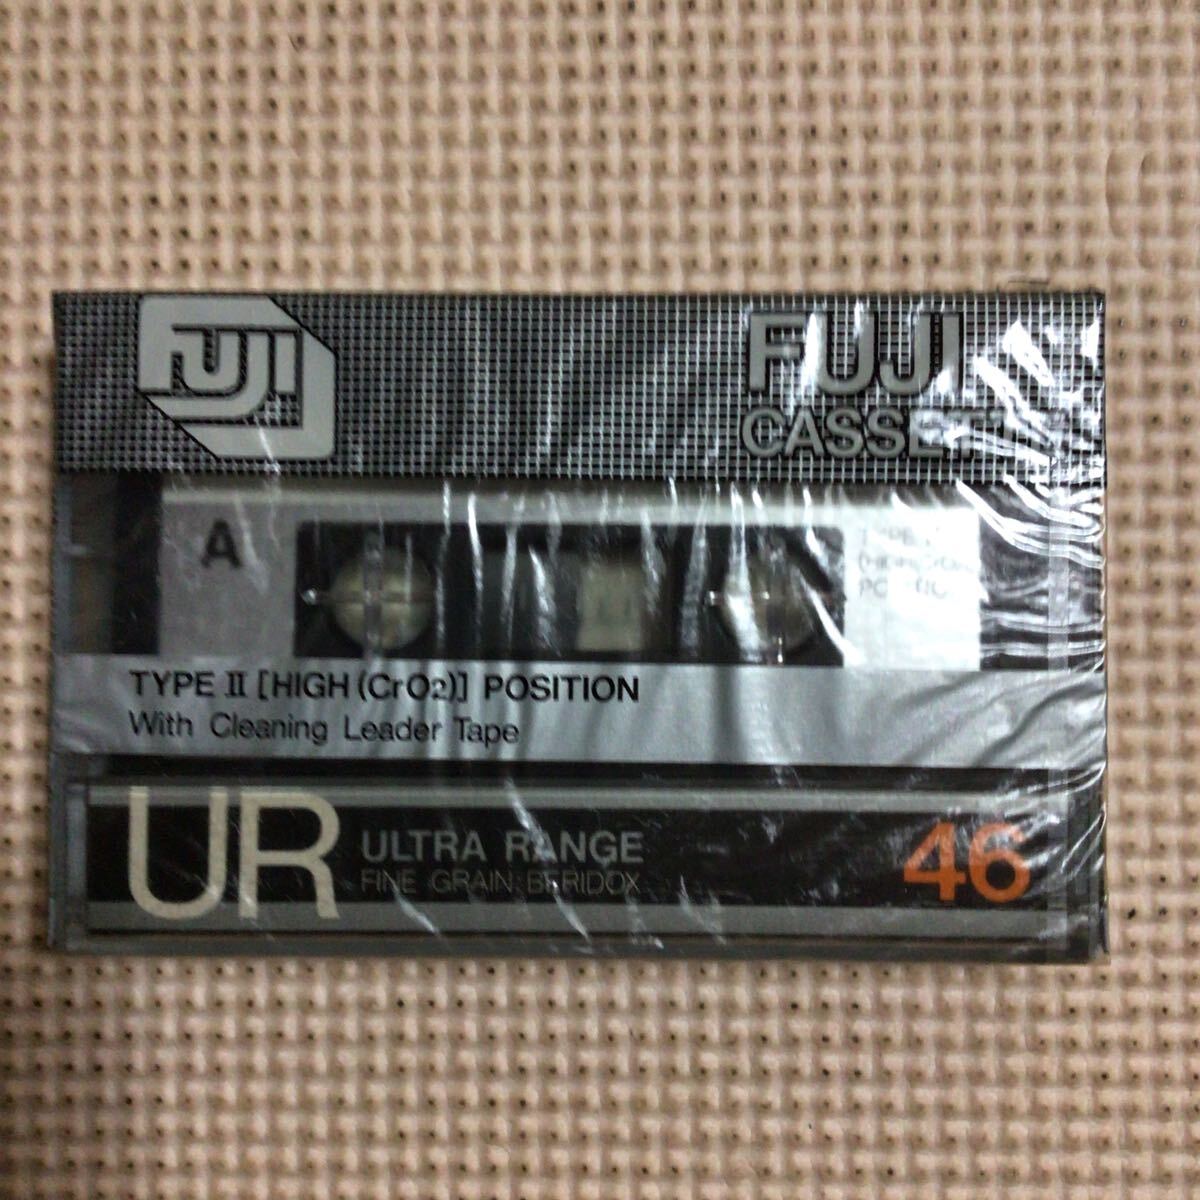 FUJI【富士写真フィルム株式会社】 UR 46 【CrO2】ハイポジション カセットテープ【未開封新品】★の画像1